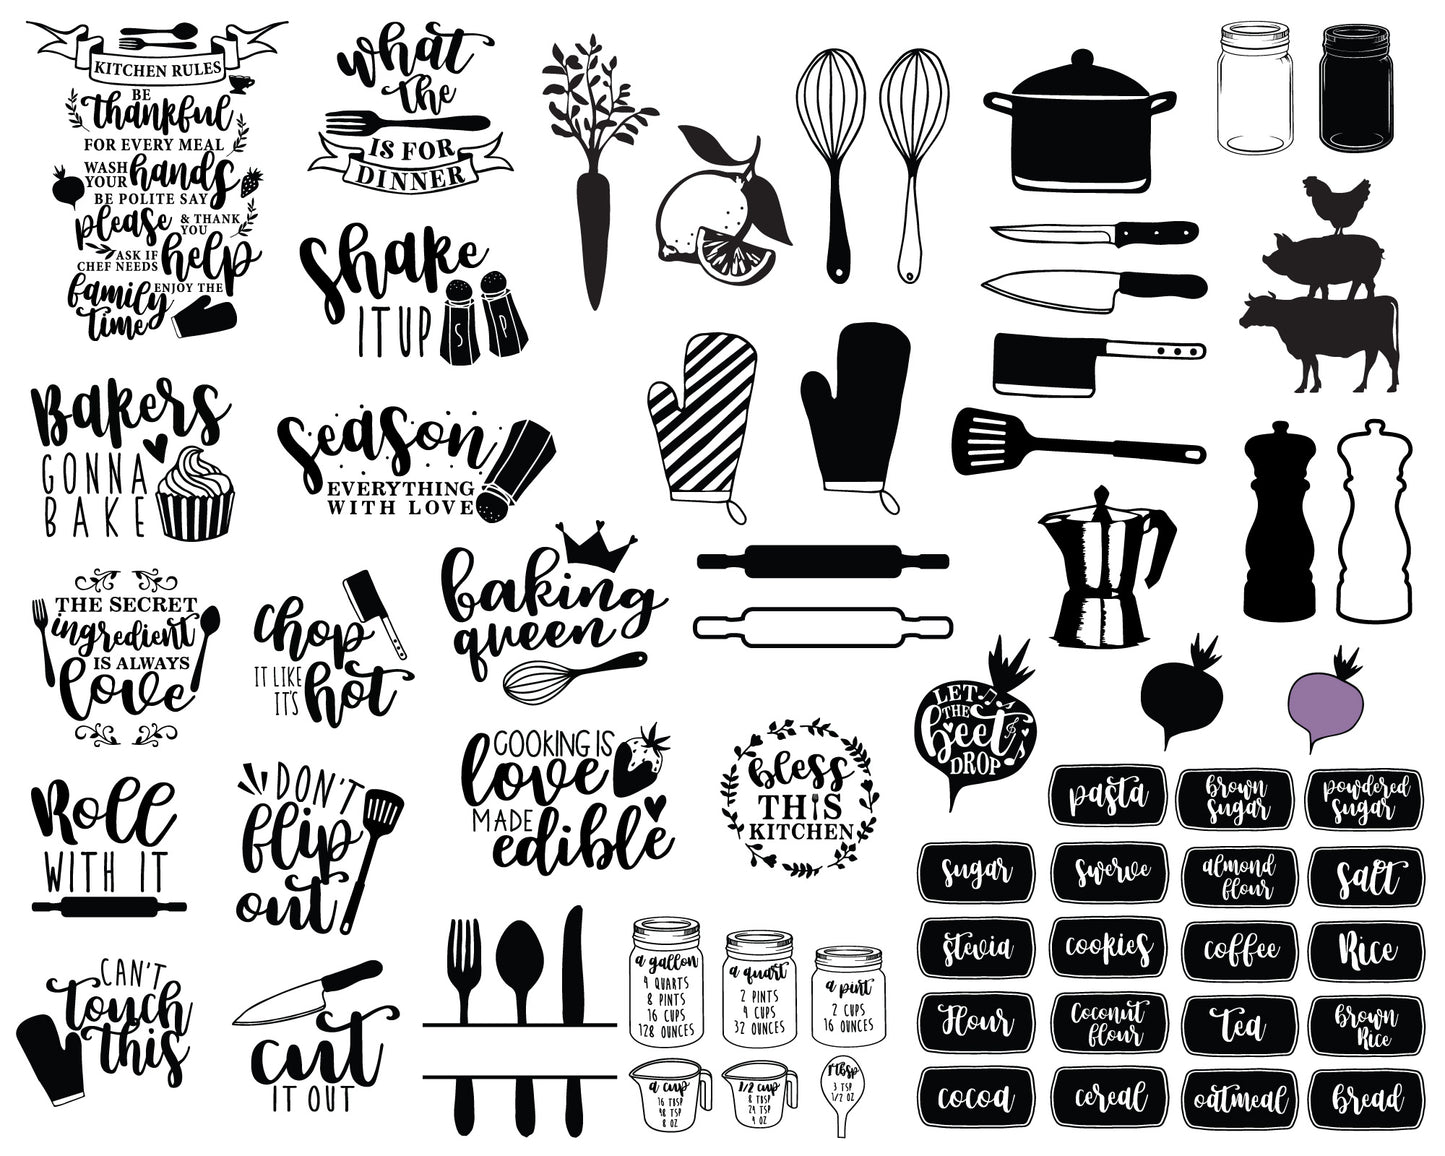 Happy Kitchen SVG Bundle